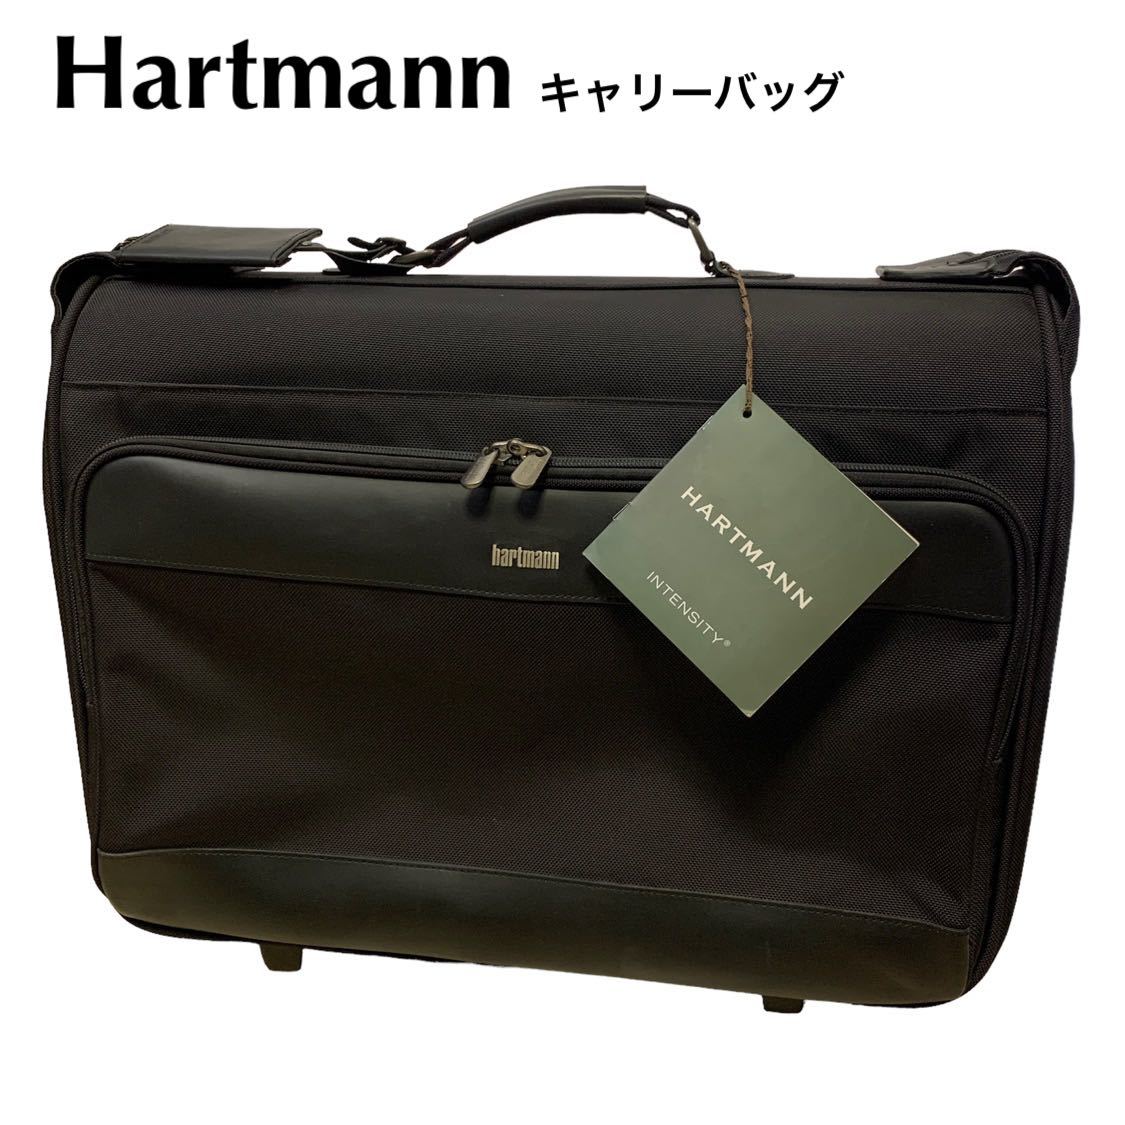 良品 ハートマン Hartmann キャリーバッグ 旅行鞄 キャリーケース